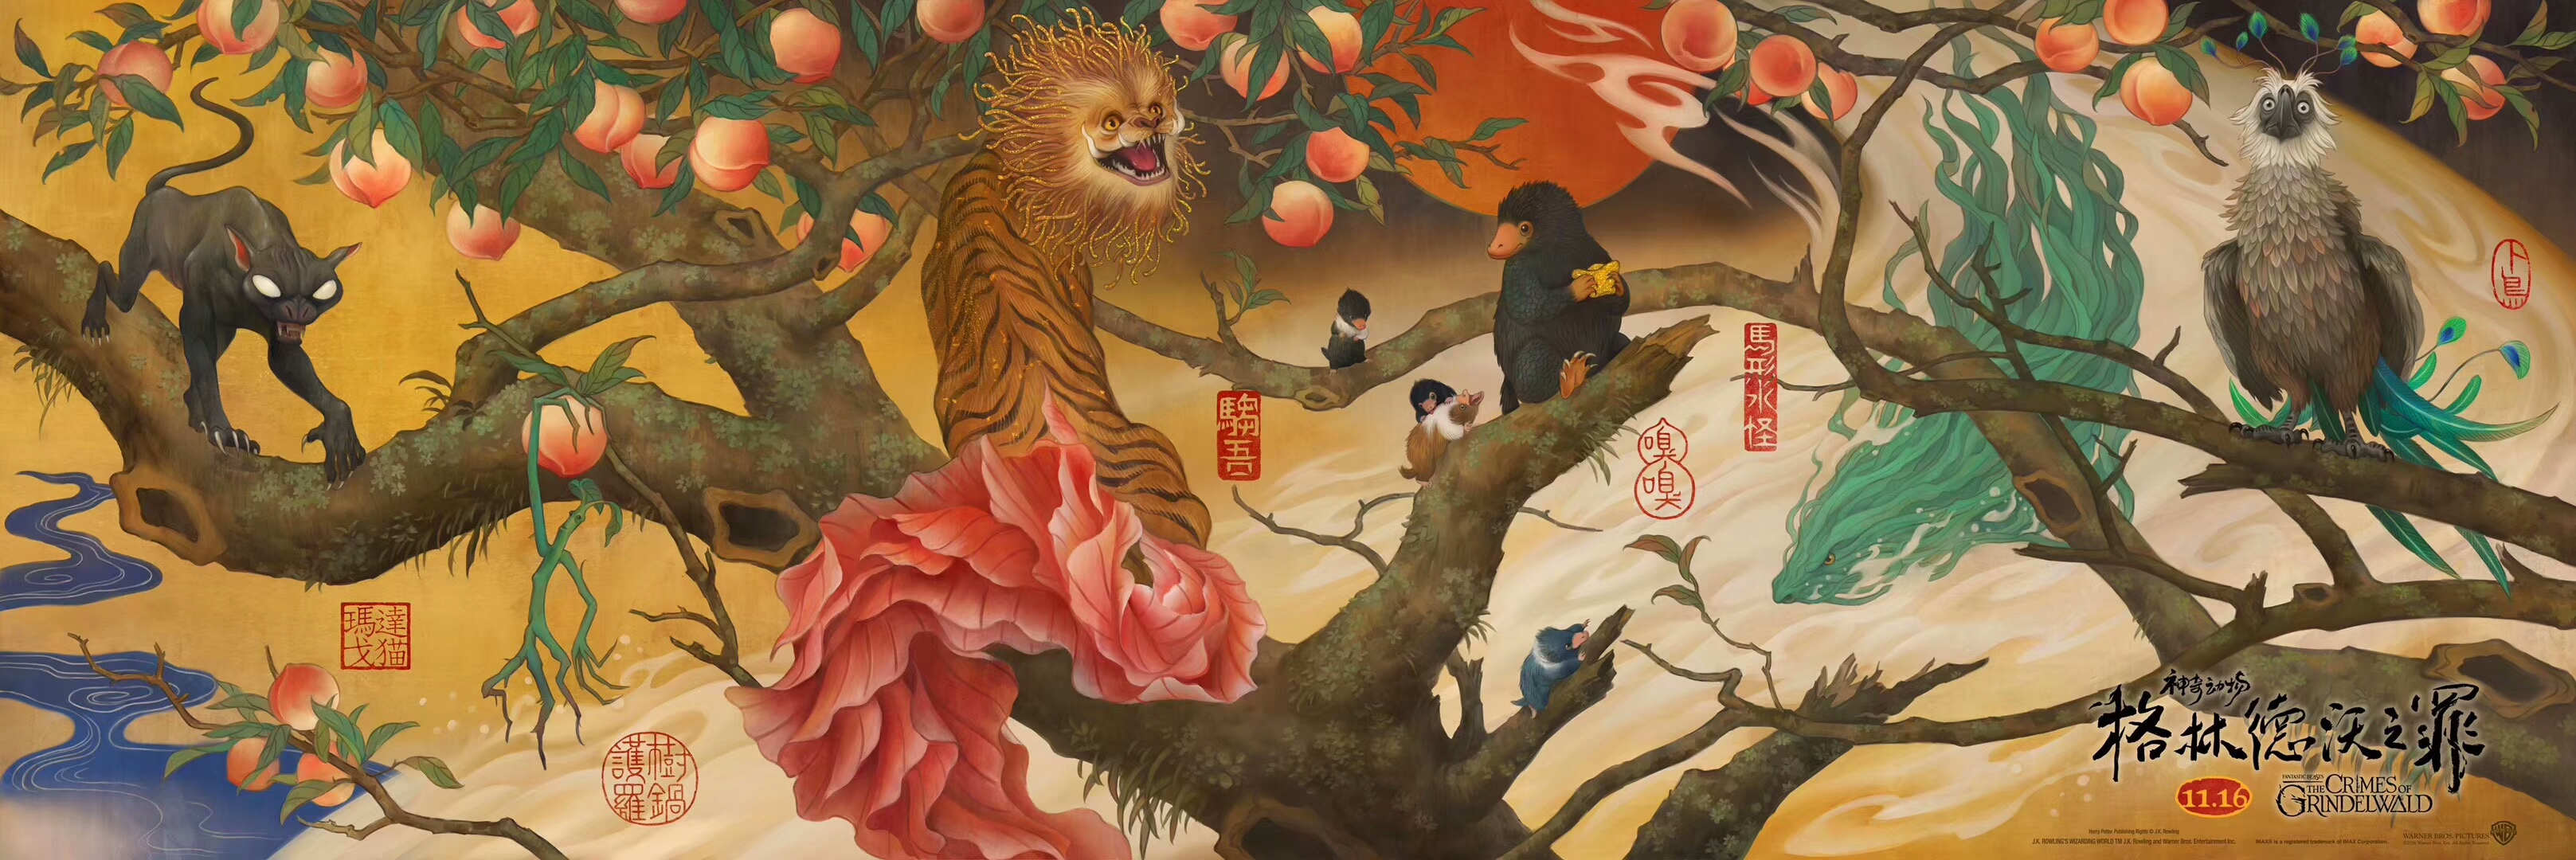 神奇动物在哪里:格林沃德之罪中国风海报连起来这么大!